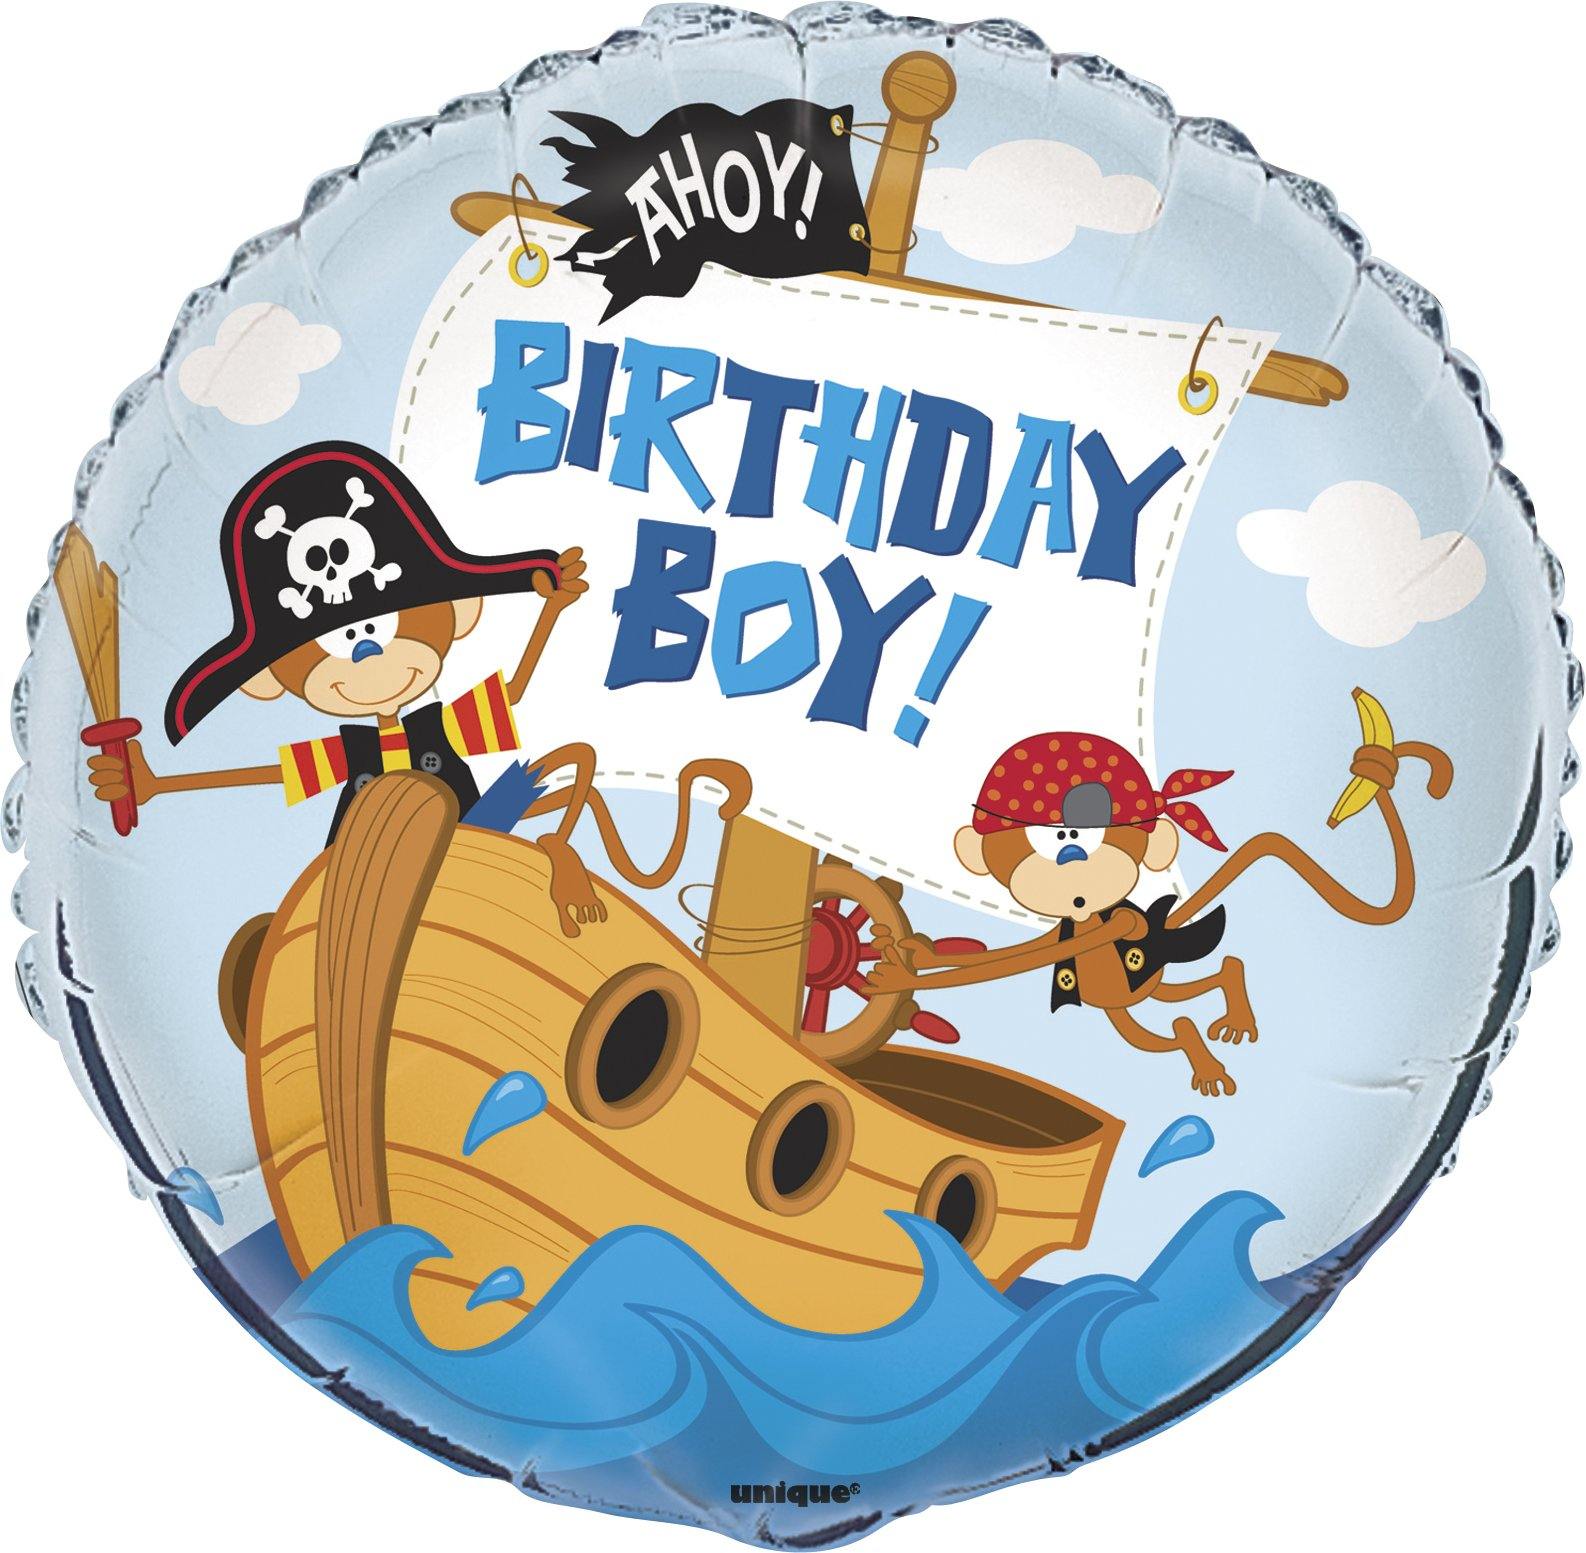 Pirate Birthday Boy Round Foil Balloon - 45cm